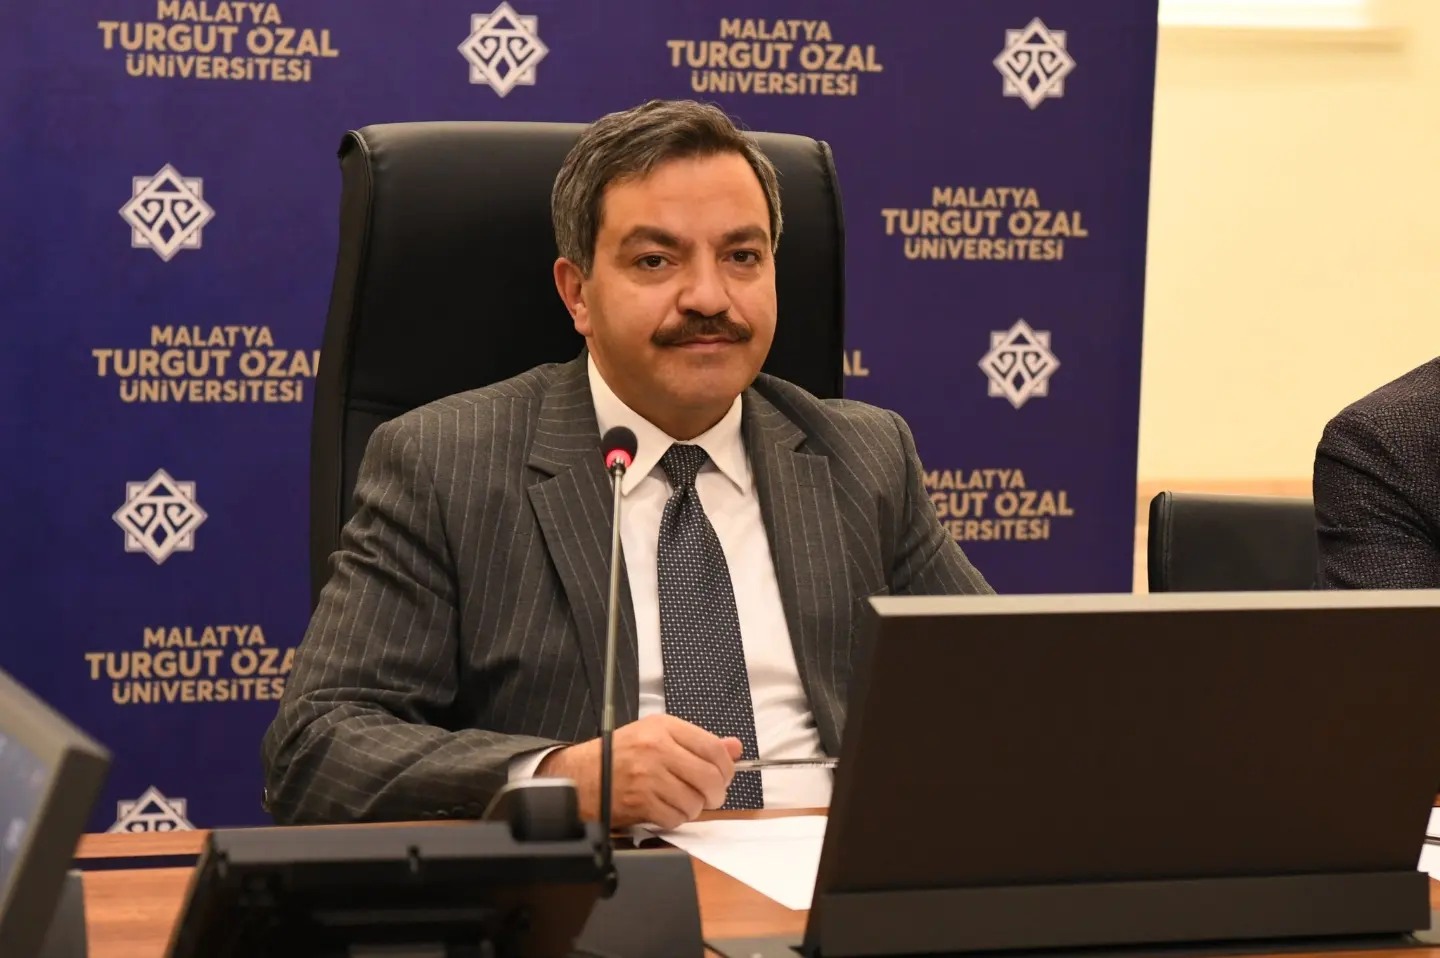 Malatya Turgut Özal Üniversitesi Mart 2024 dönemi senato ve yönetim kurulu toplantısında alınan kararlar üniversitenin gelişimi için önemli bir adım oldu.